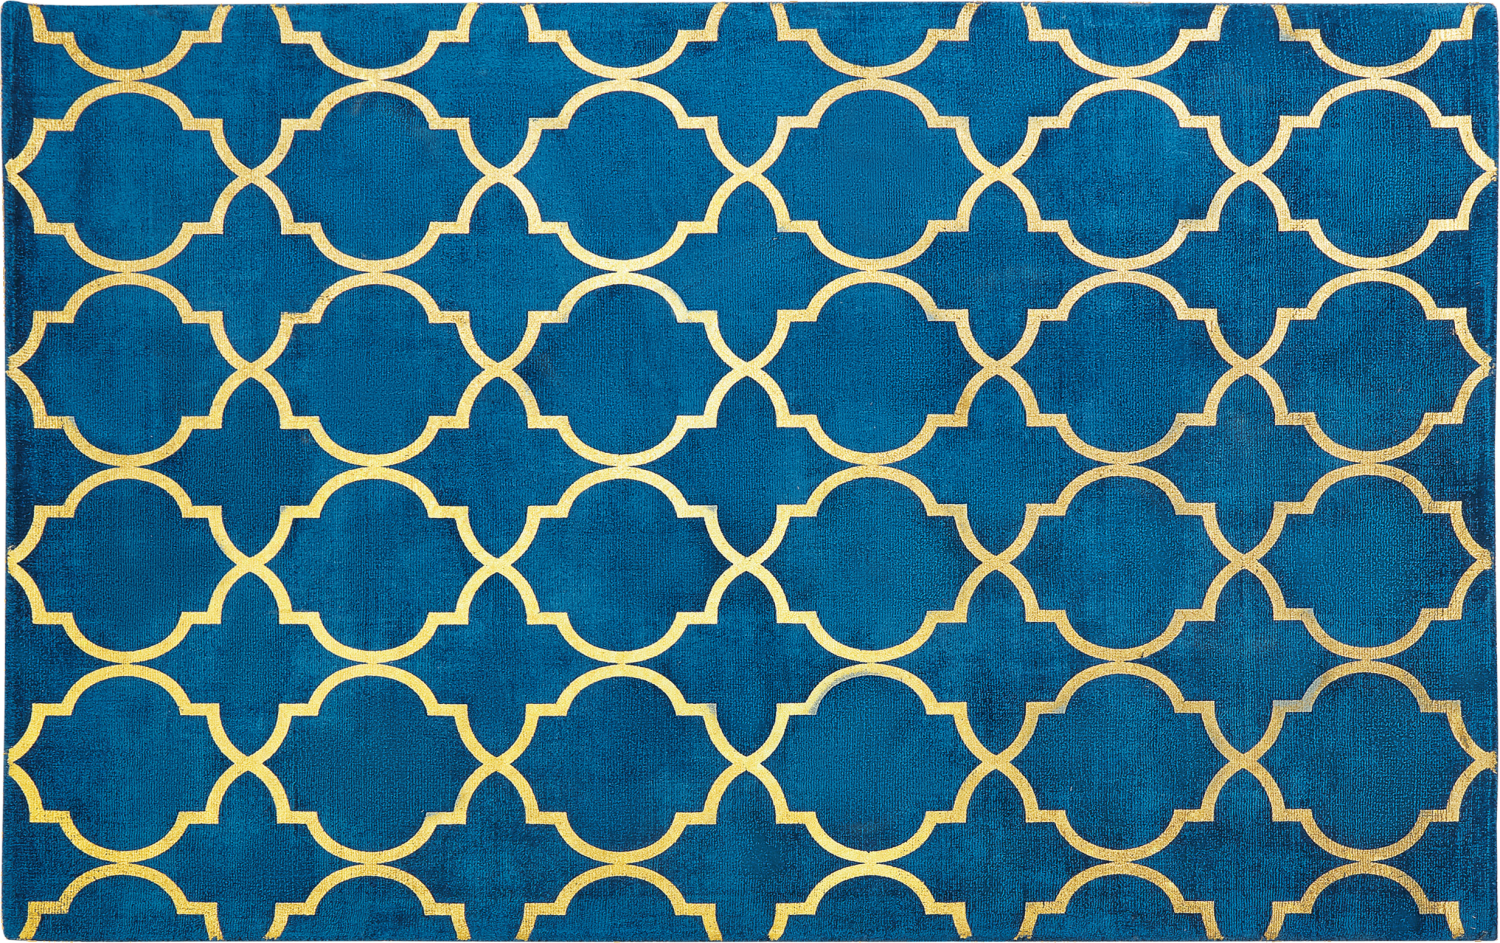 Teppich marineblau/gold 140 x 200 cm marokkanisches Muster YELKI Bild 1